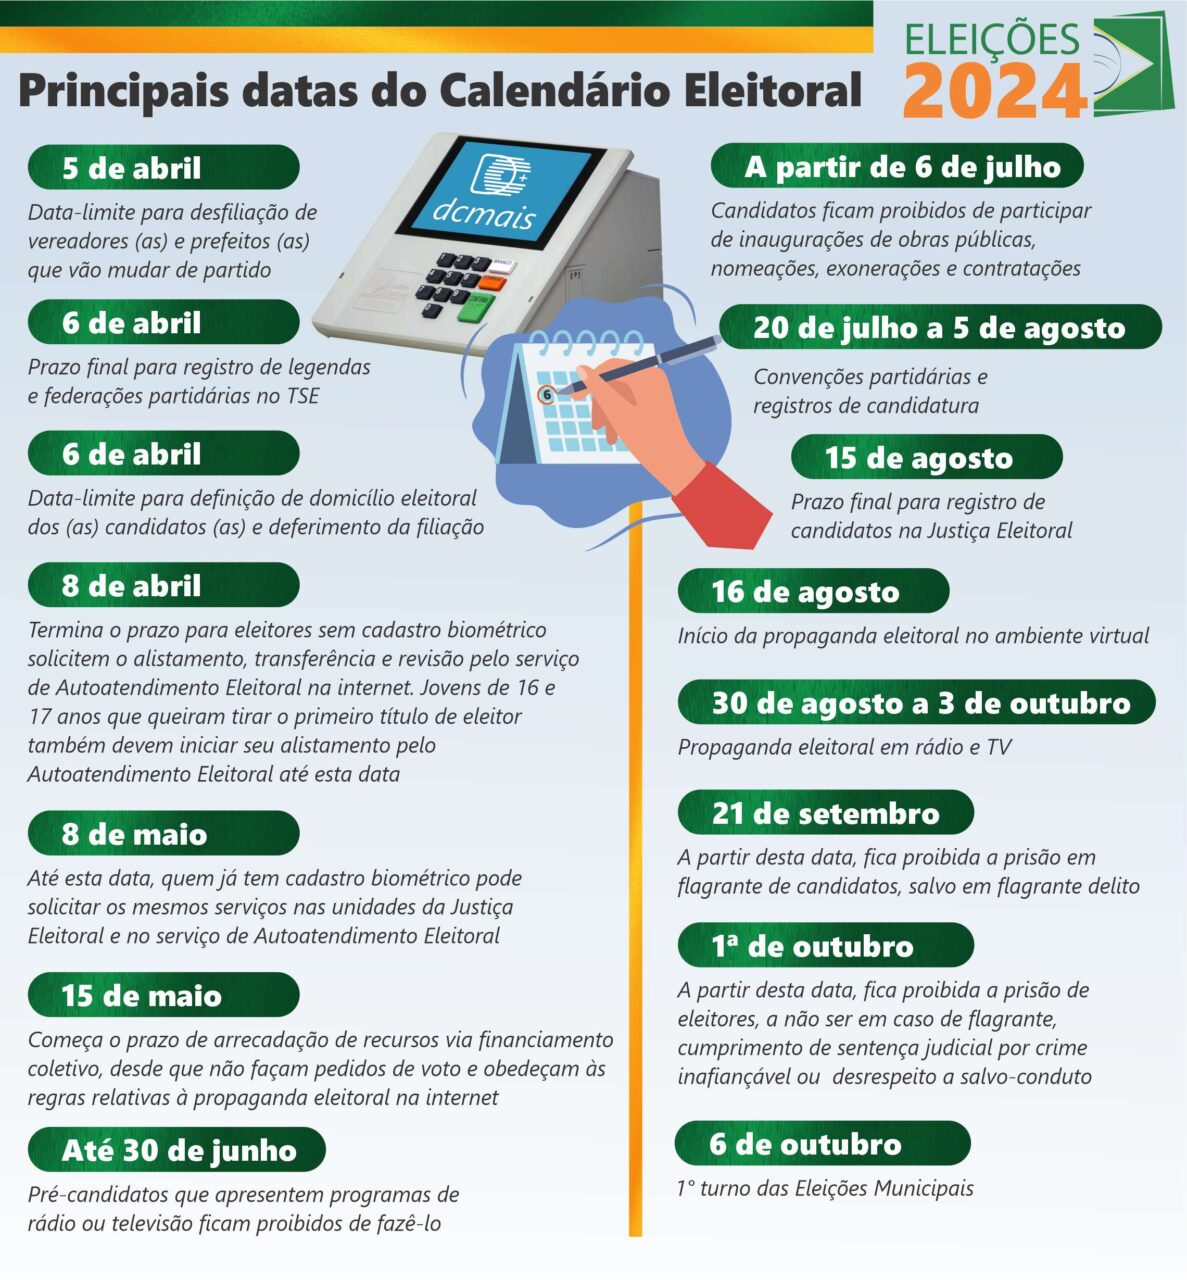 CONFIRA AS PRINCIPAIS DATAS DO CALENDÁRIO PARA AS ELEIÇÕES 2024